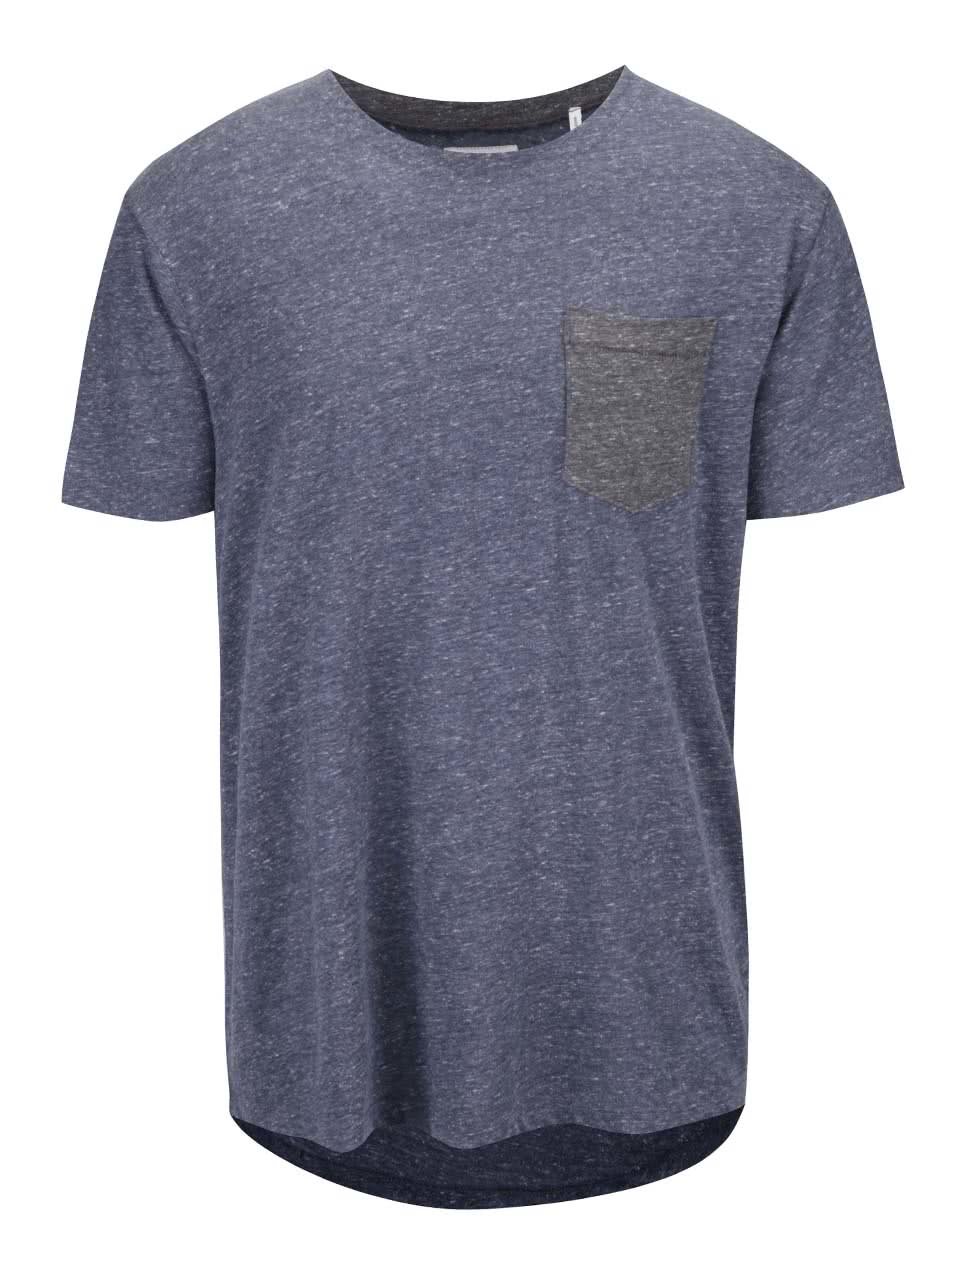 Šedo-modré žíhané tričko s náprsní kapsou Shine Original